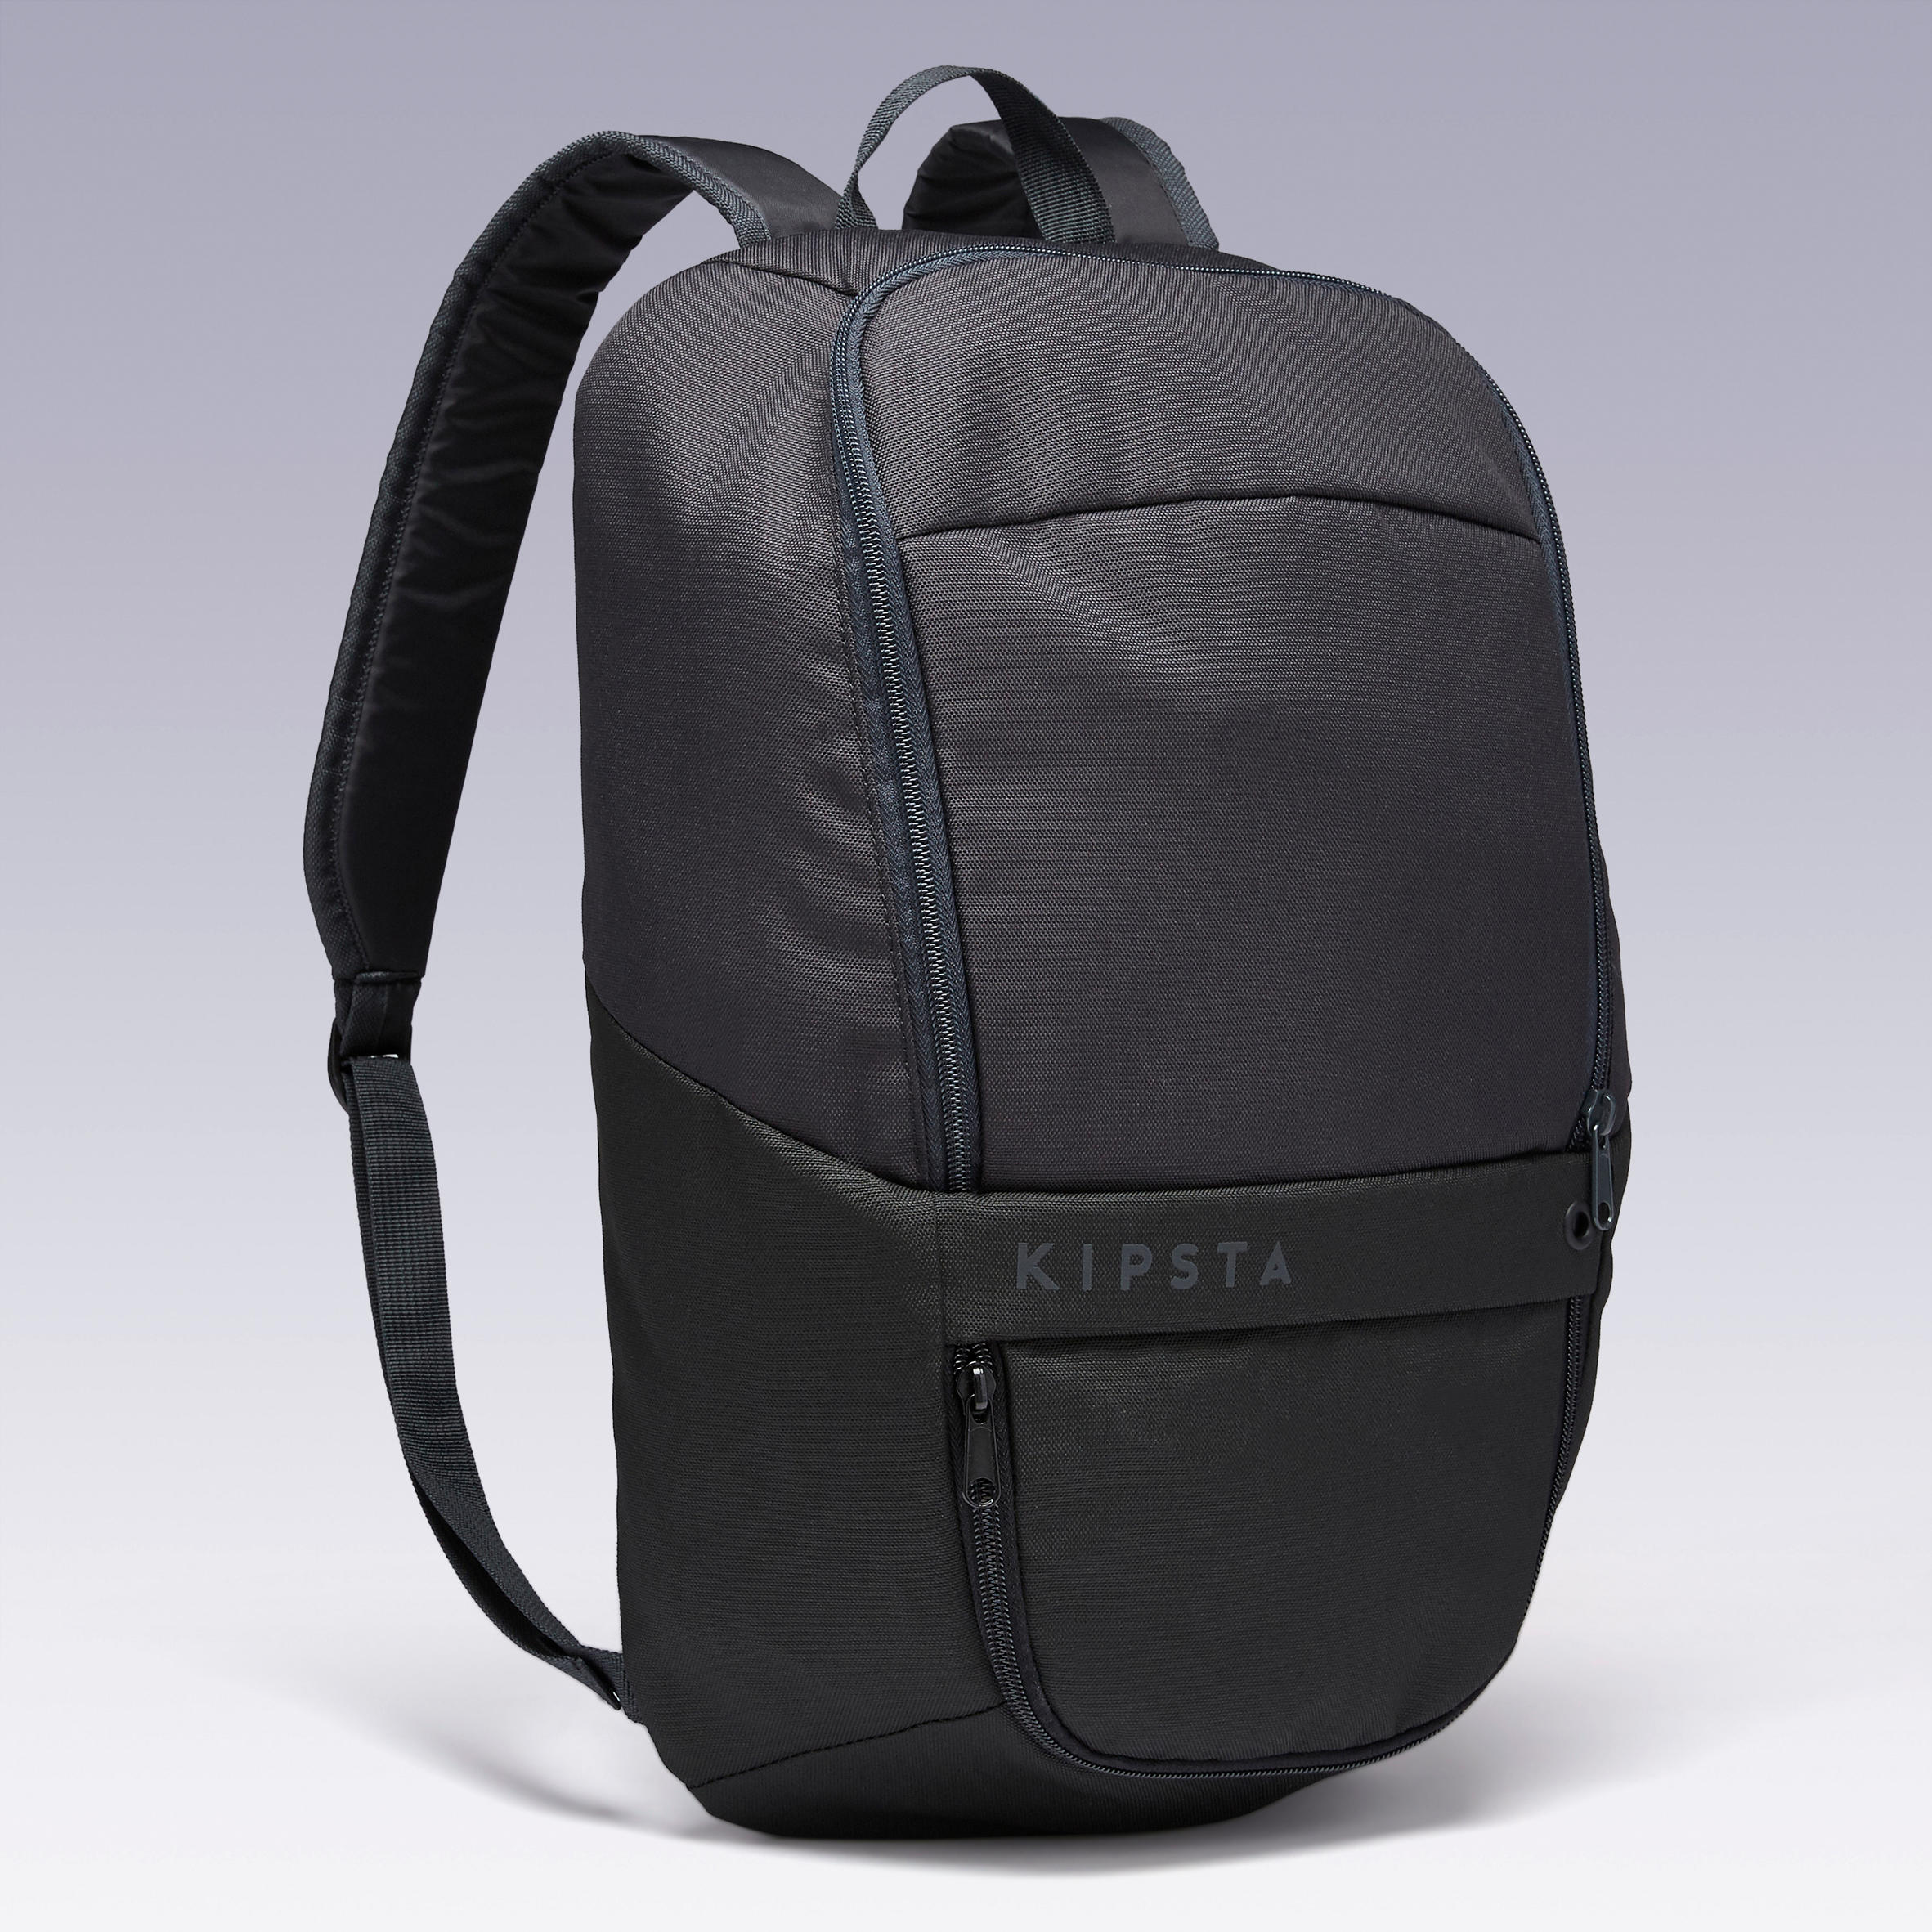 ULPP 17-Litre Backpack - Black 3/11